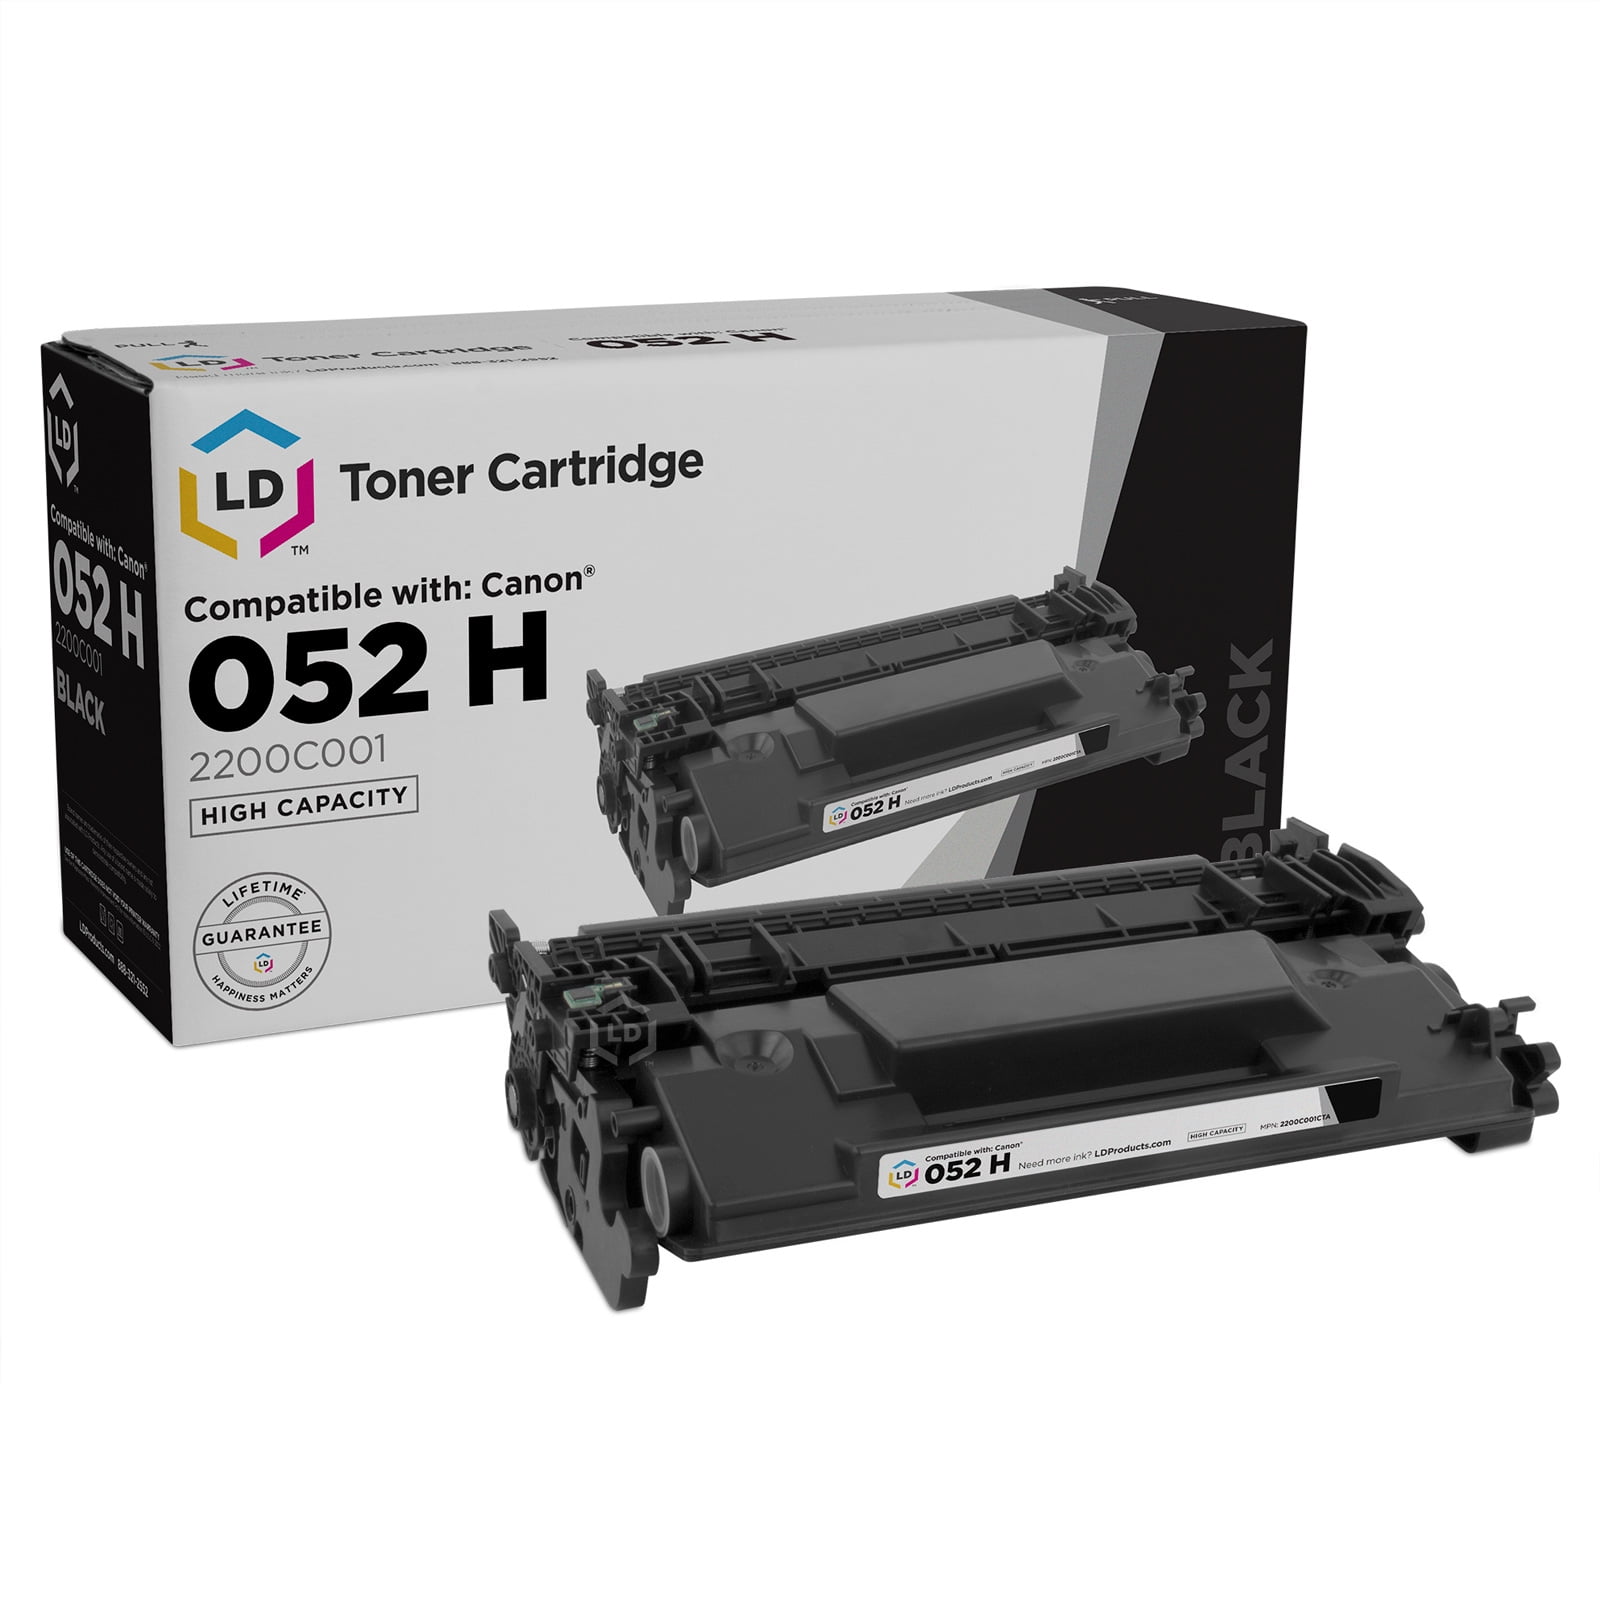 3-PK 052H Toner Cartridge For Canon imageCLASS MF426dw MF424dw LBP214dw LBP215dw 